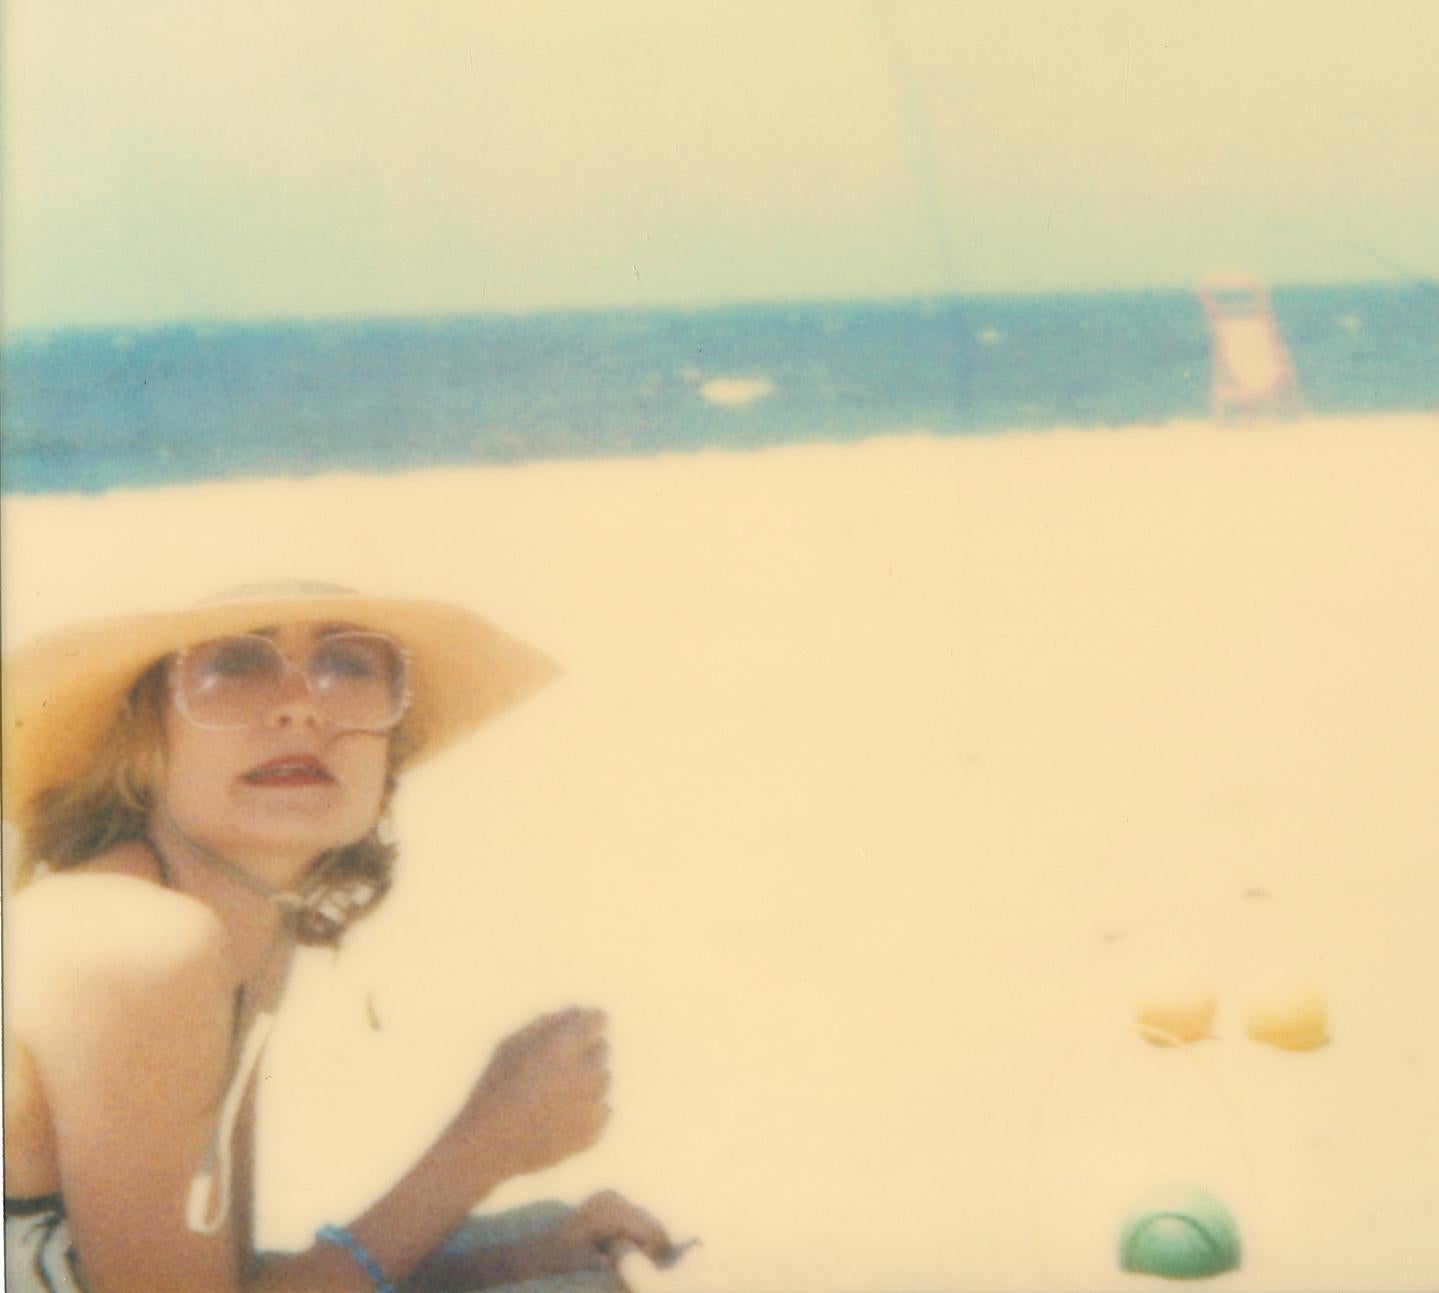 Ohne Titel (Beachshoot) - analog, Polaroid, handgedruckt, Vintage (Zeitgenössisch), Photograph, von Stefanie Schneider